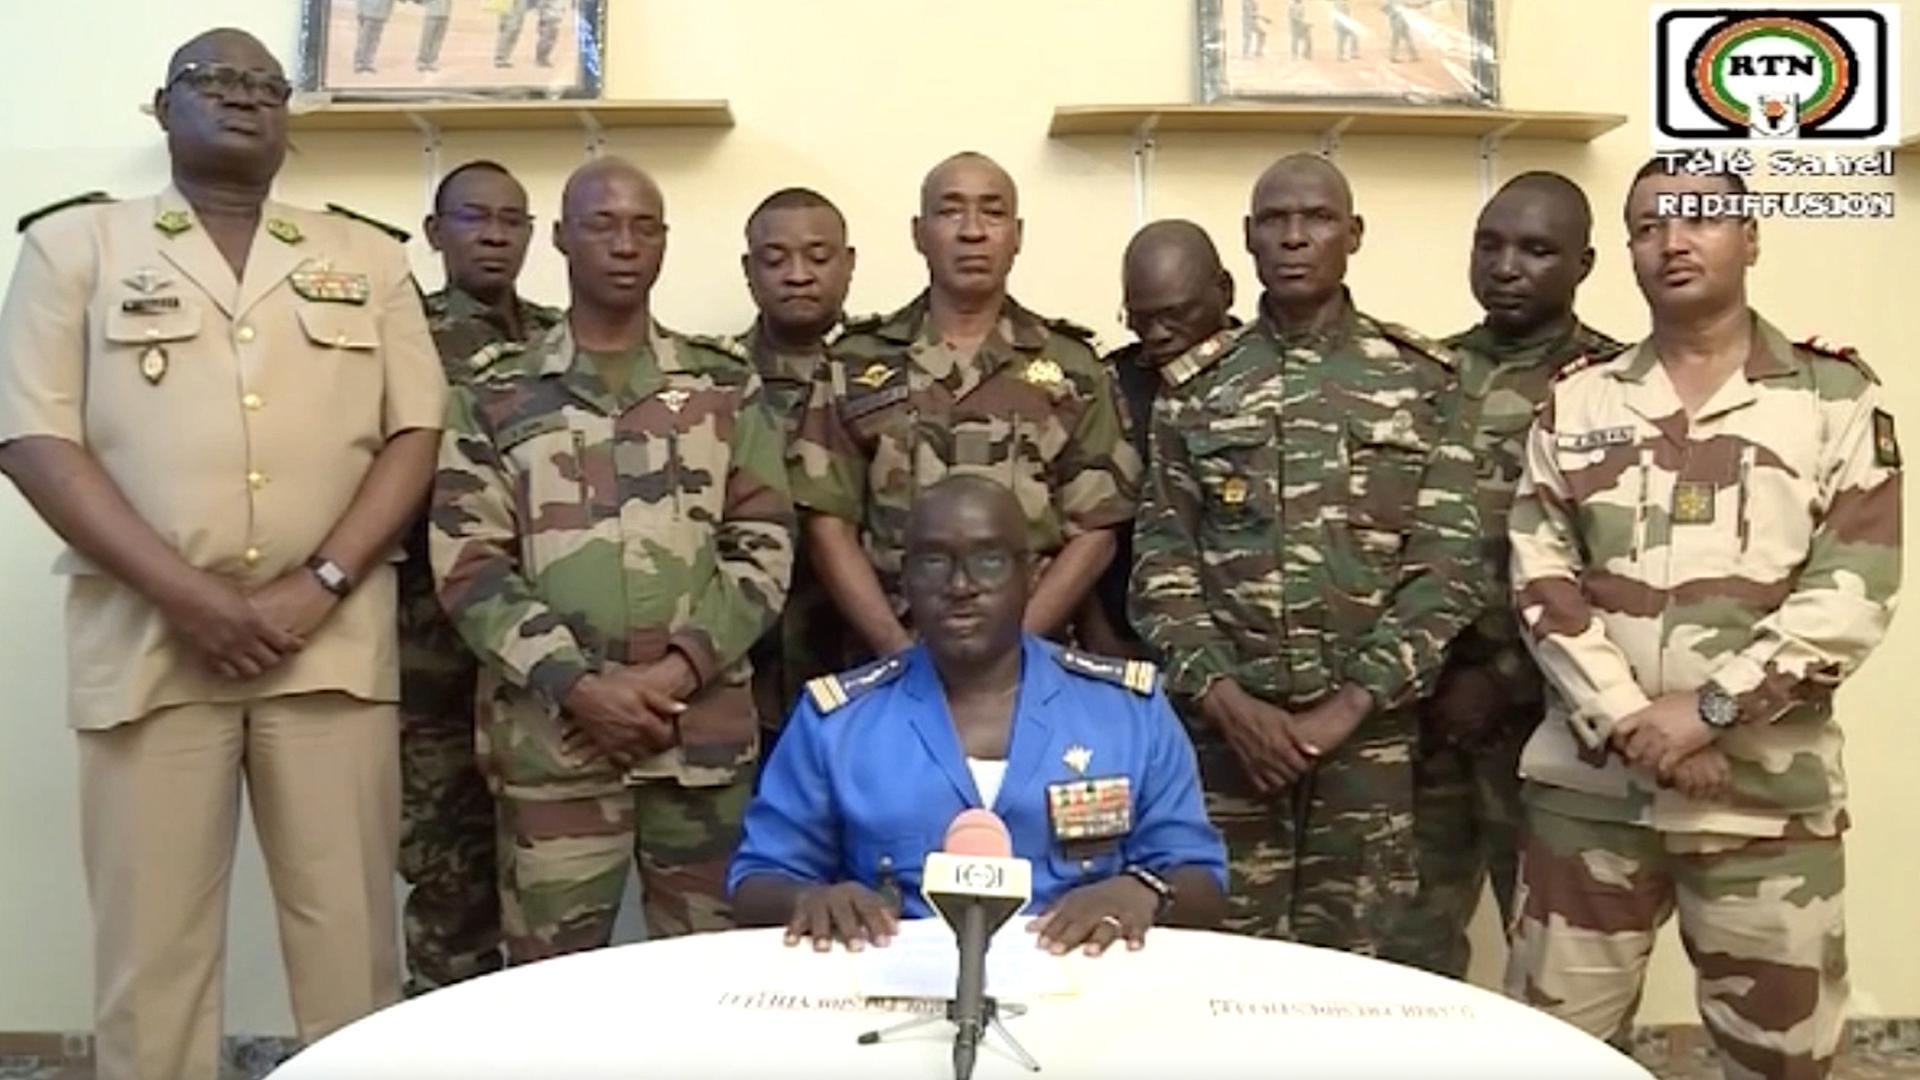 Soldaten in Niger kündigen Staatsstreich im nationalen Fernsehen an. um den Sturz von Präsident Mohamed Bazoum in Niger zu verkünden. Sie nannten sich "Nationaler Rat für den Schutz des Vaterlandes" (CLSP) und verlasen in einem von ihnen gedrehten und im staatlichen Fernsehen ORTN ausgestrahlten Video eine Erklärung zum Staatsstreich. 